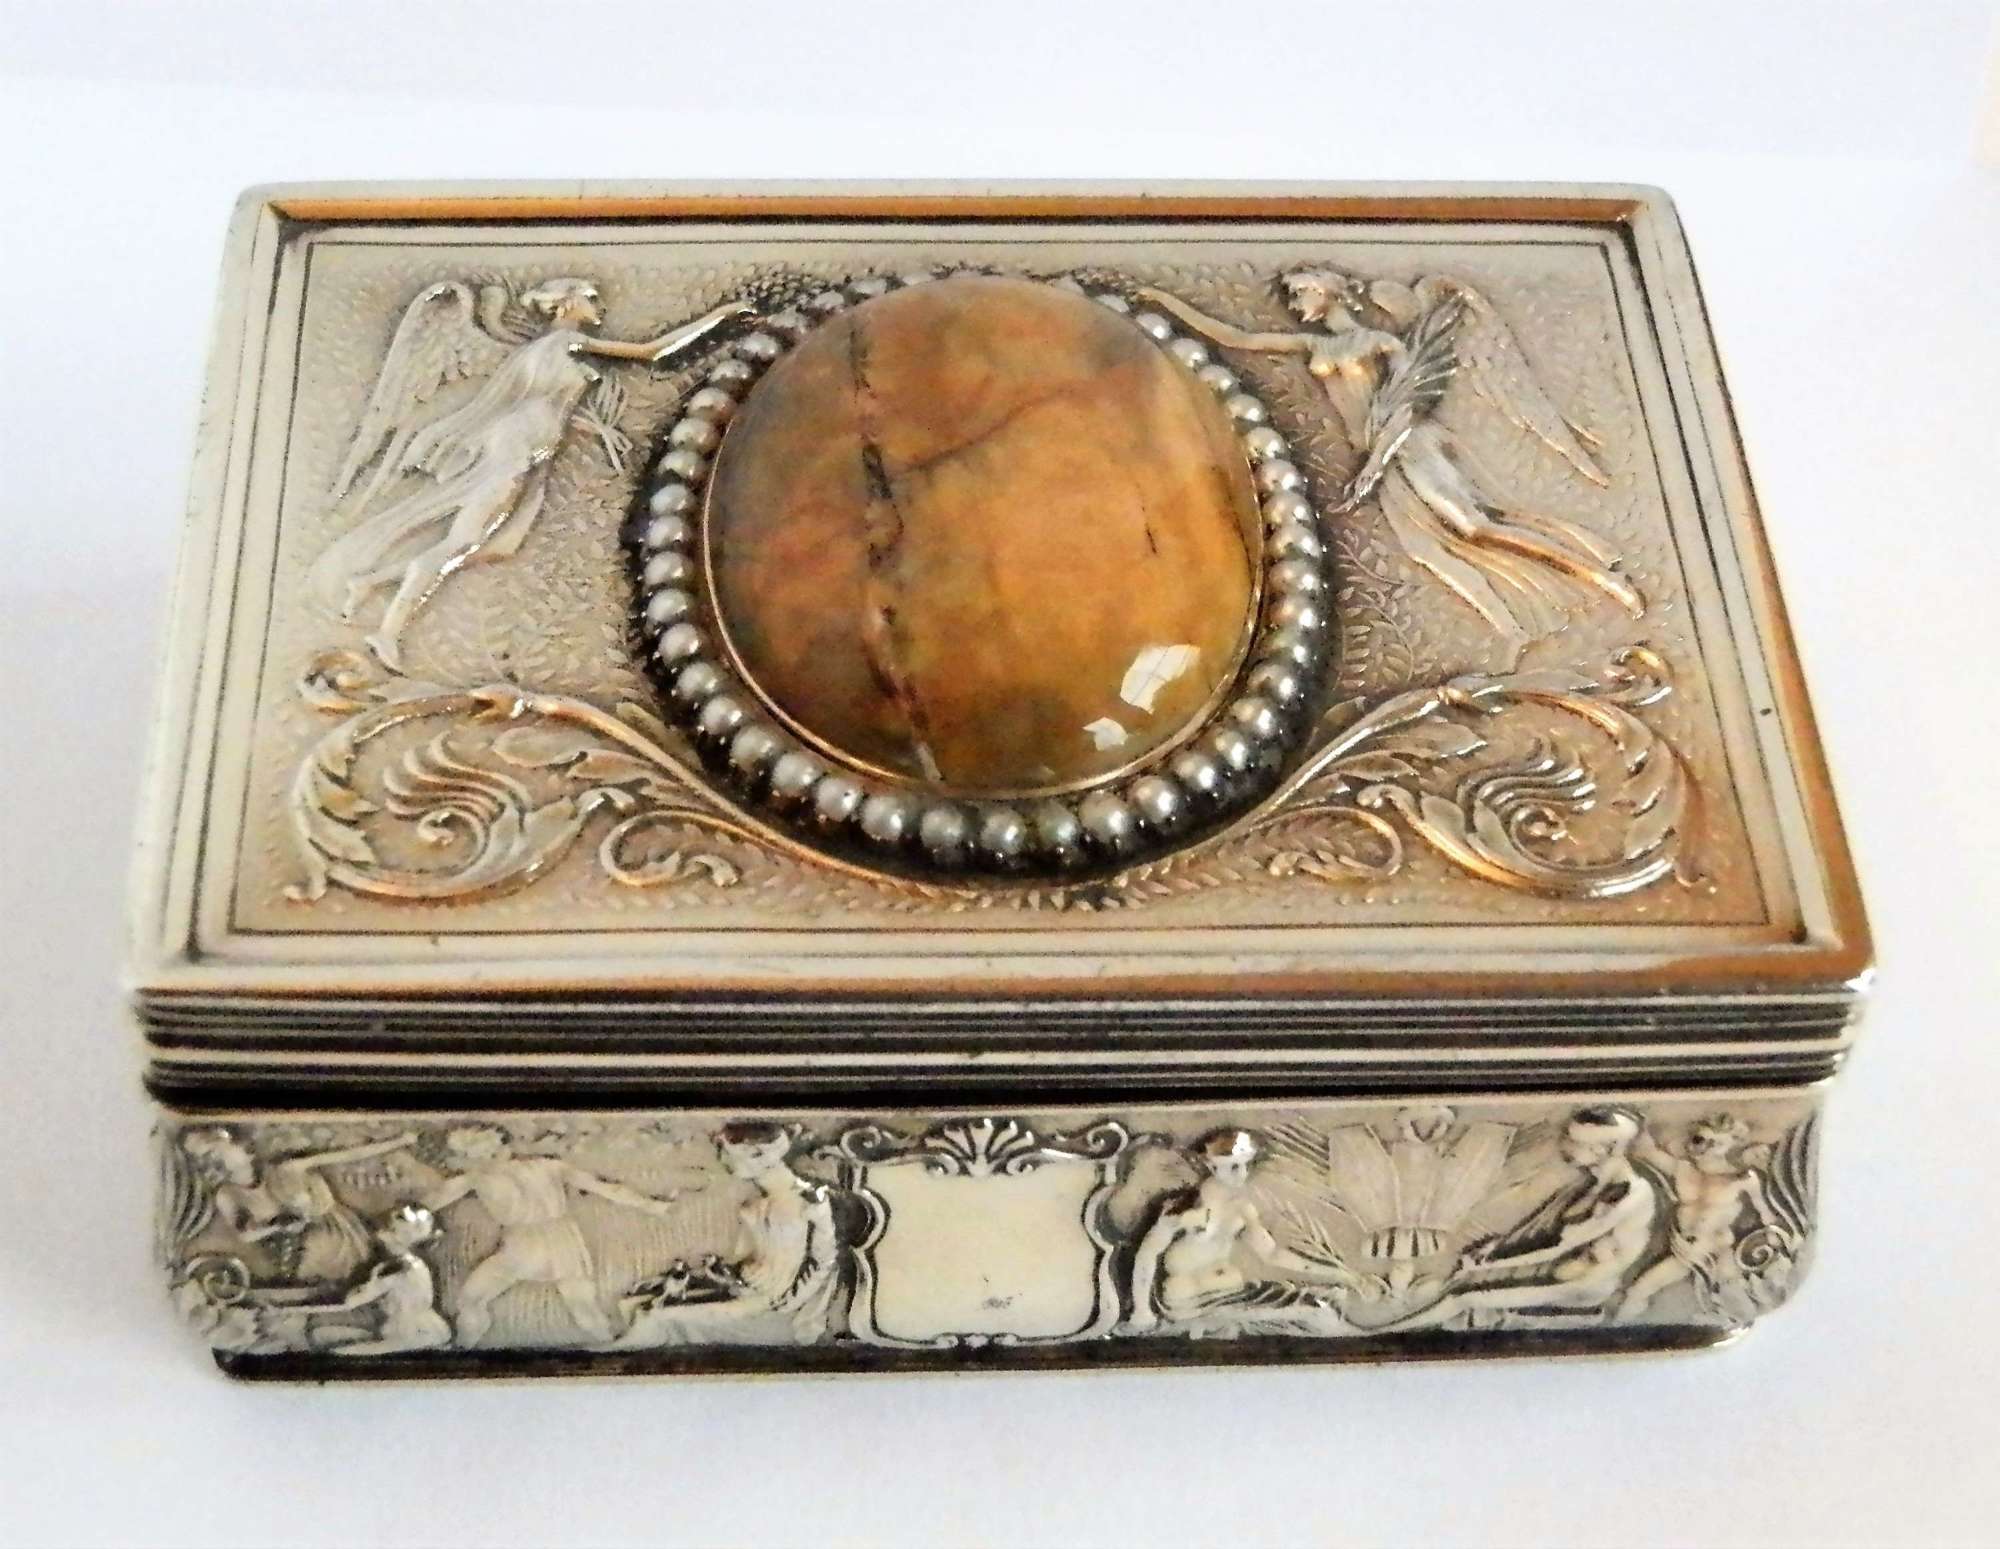 Edwardian silver gilt snuff box by Garrards, 1909